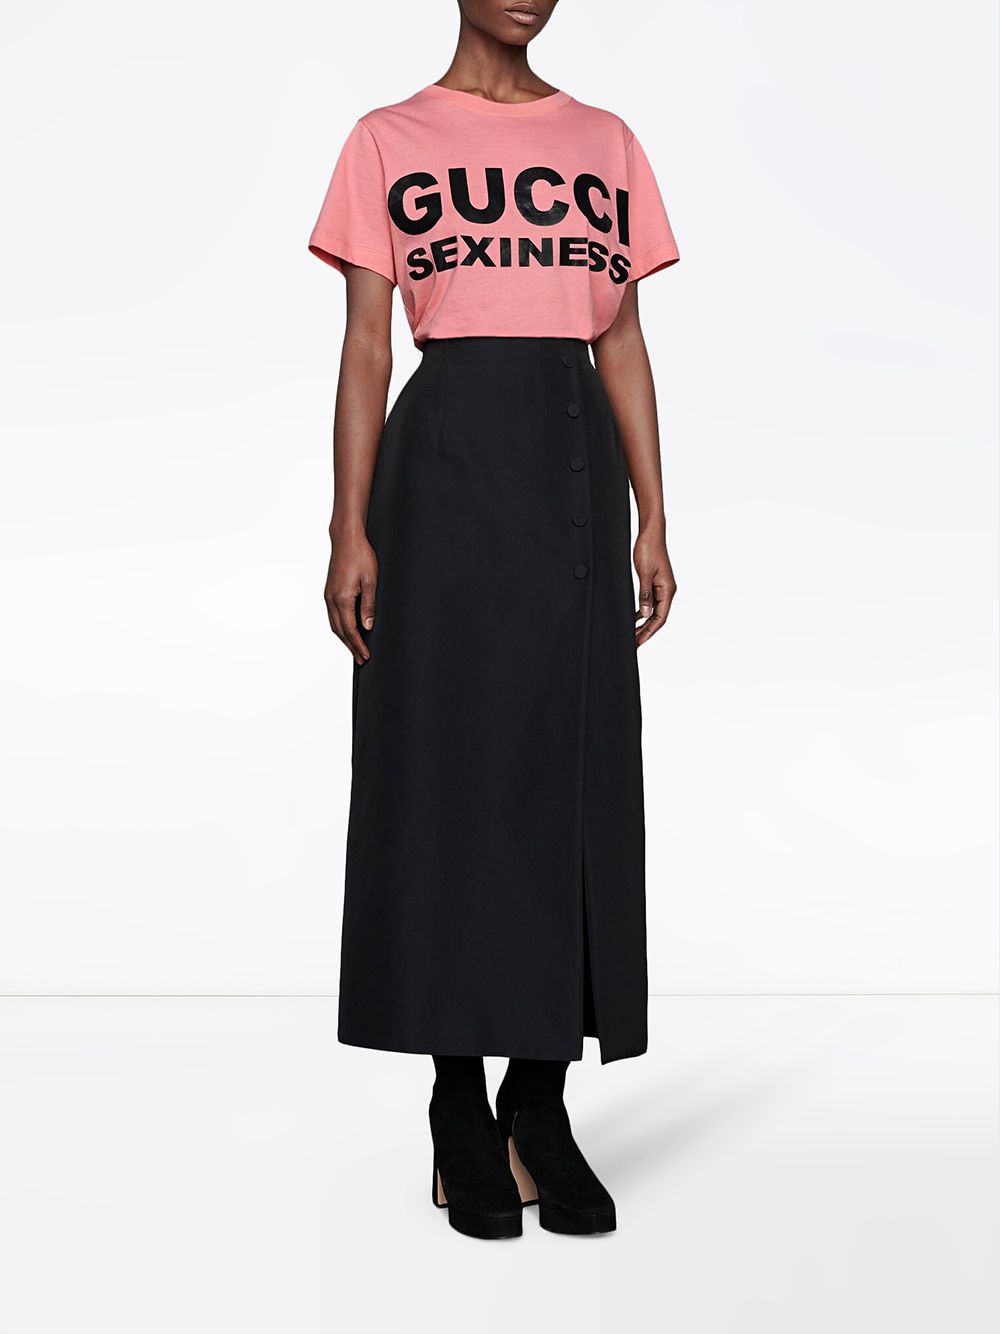 фото Gucci футболка с надписью